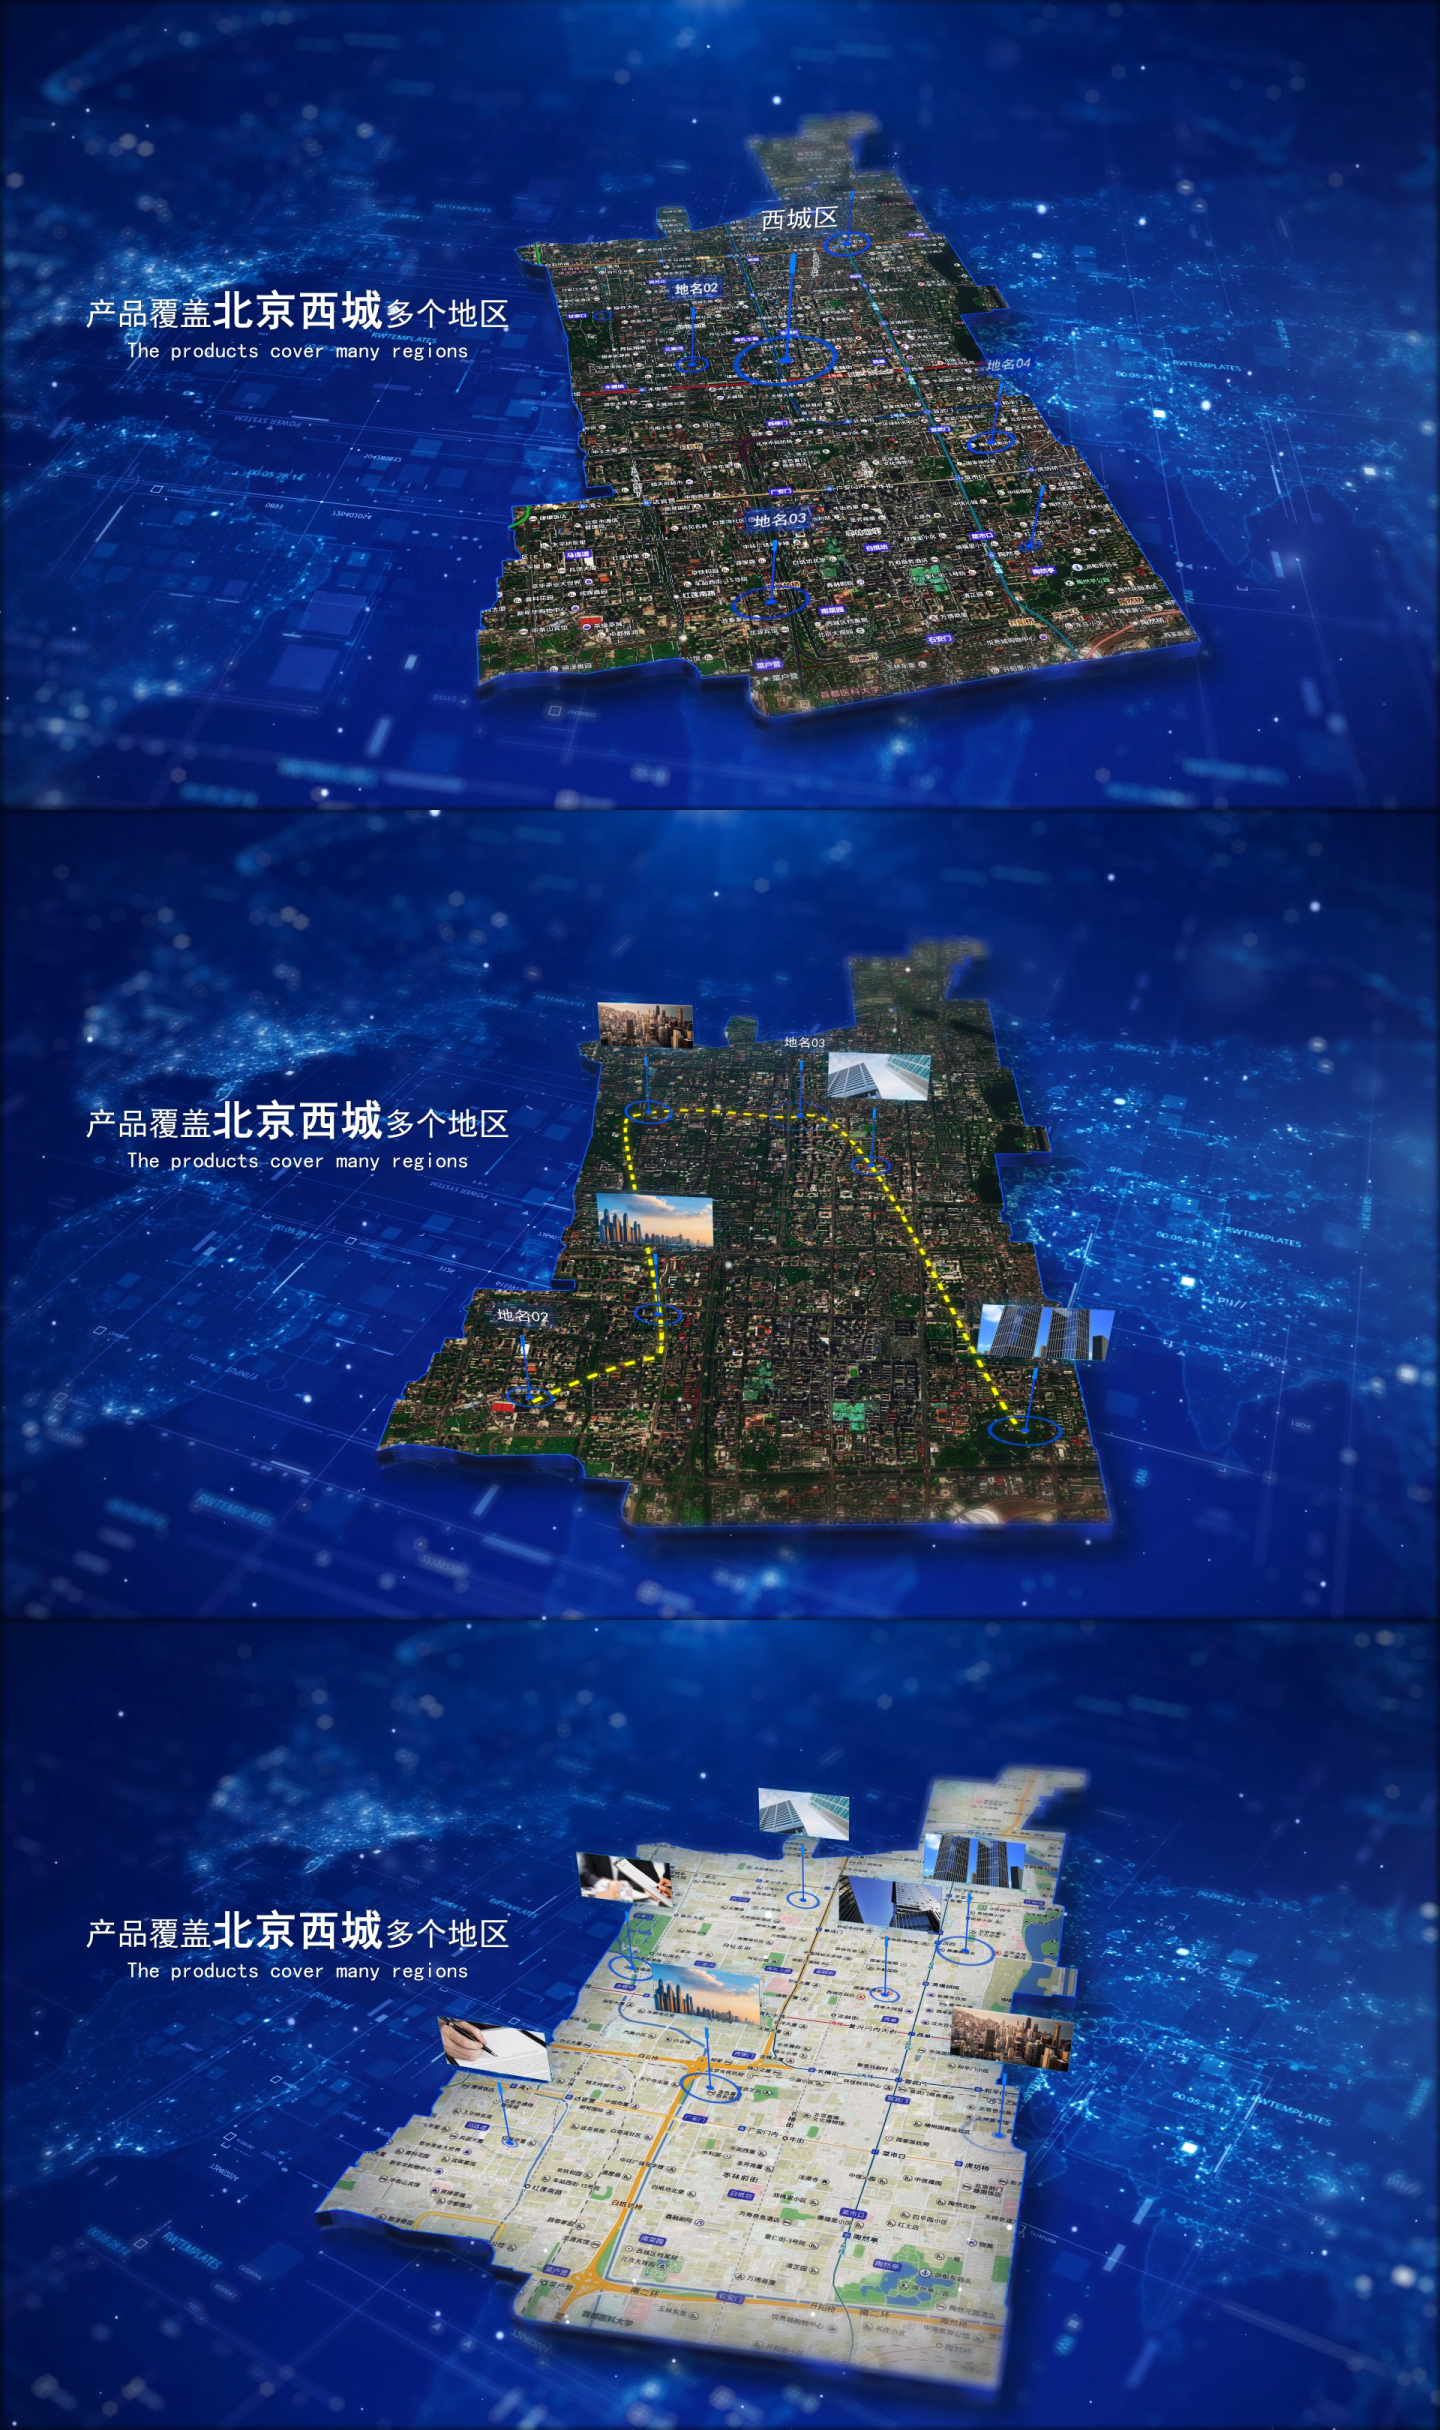 【北京西城地图】简洁地图定位导航指示路线